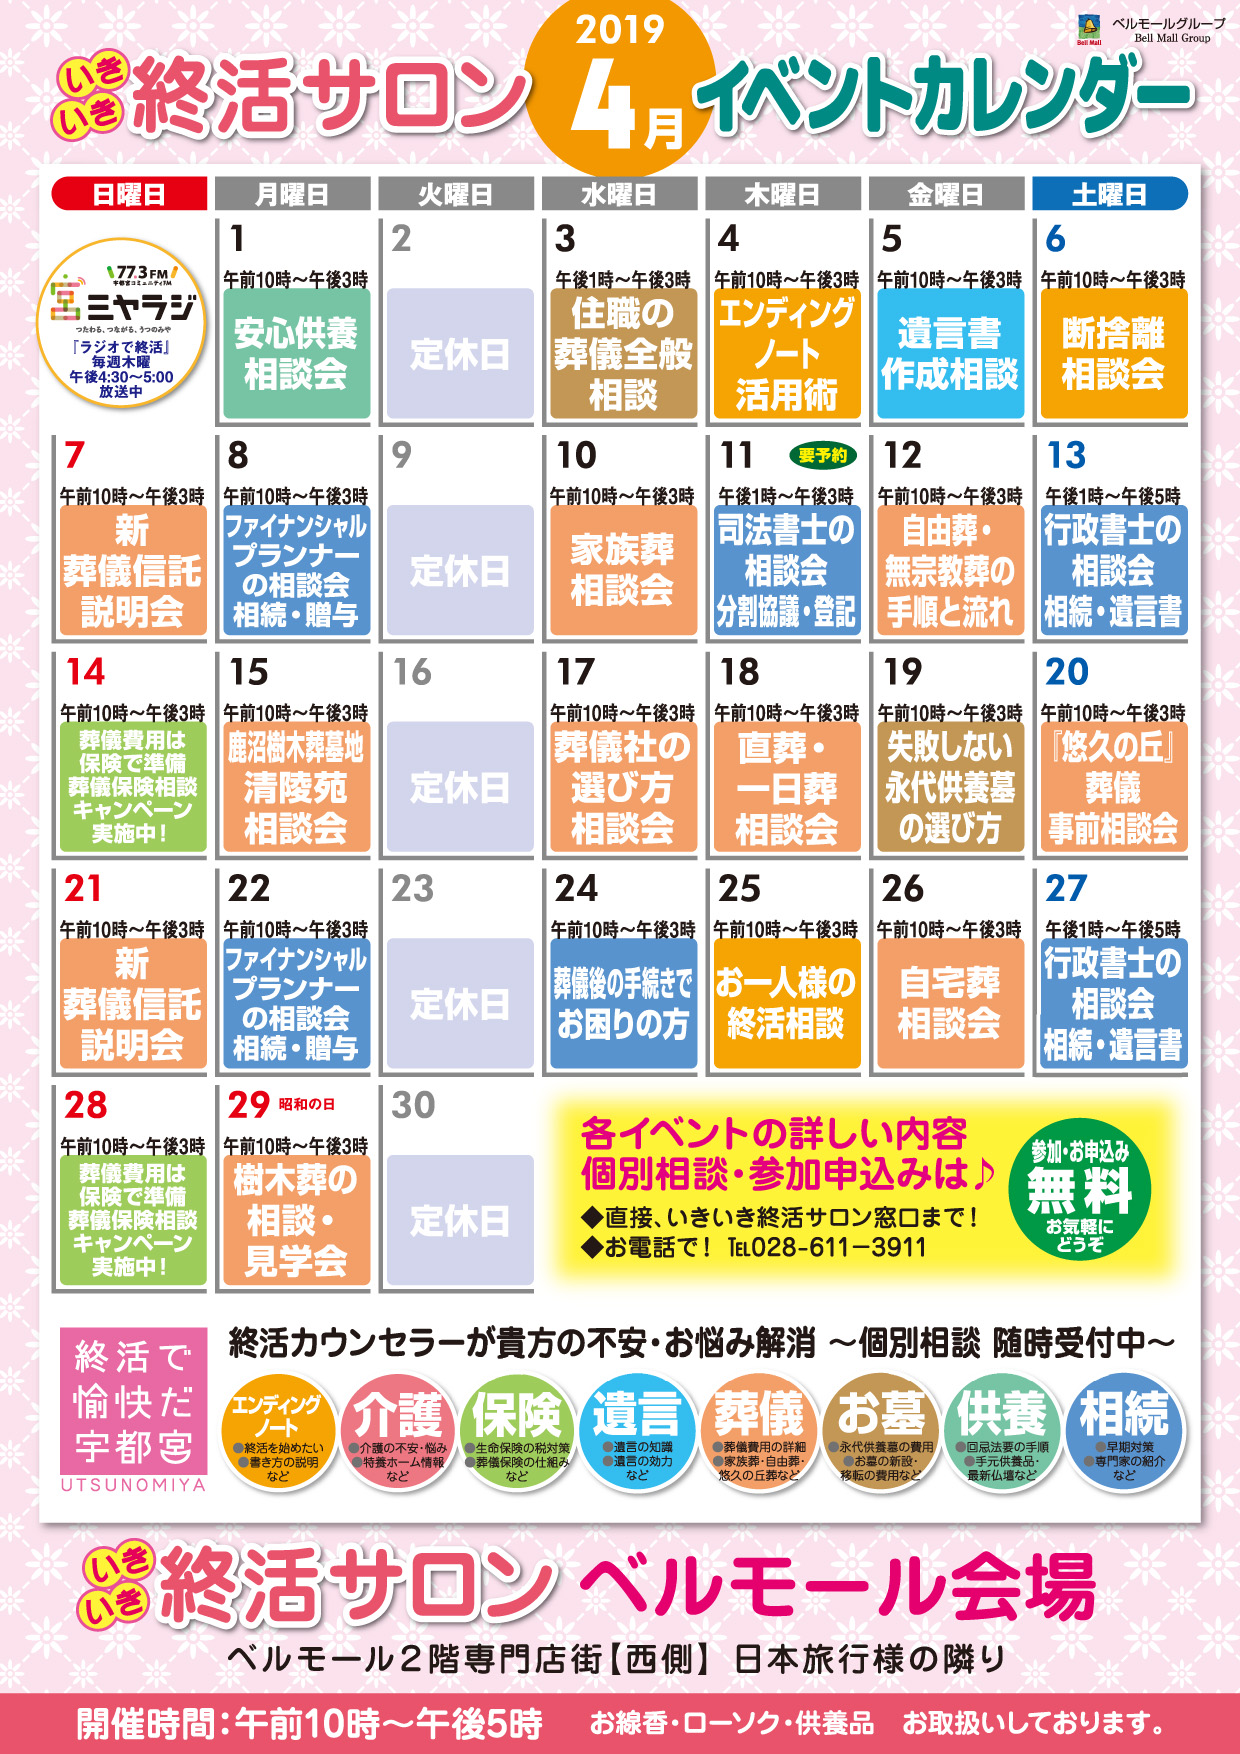 いきいき終活サロン4月イベントカレンダーできました。